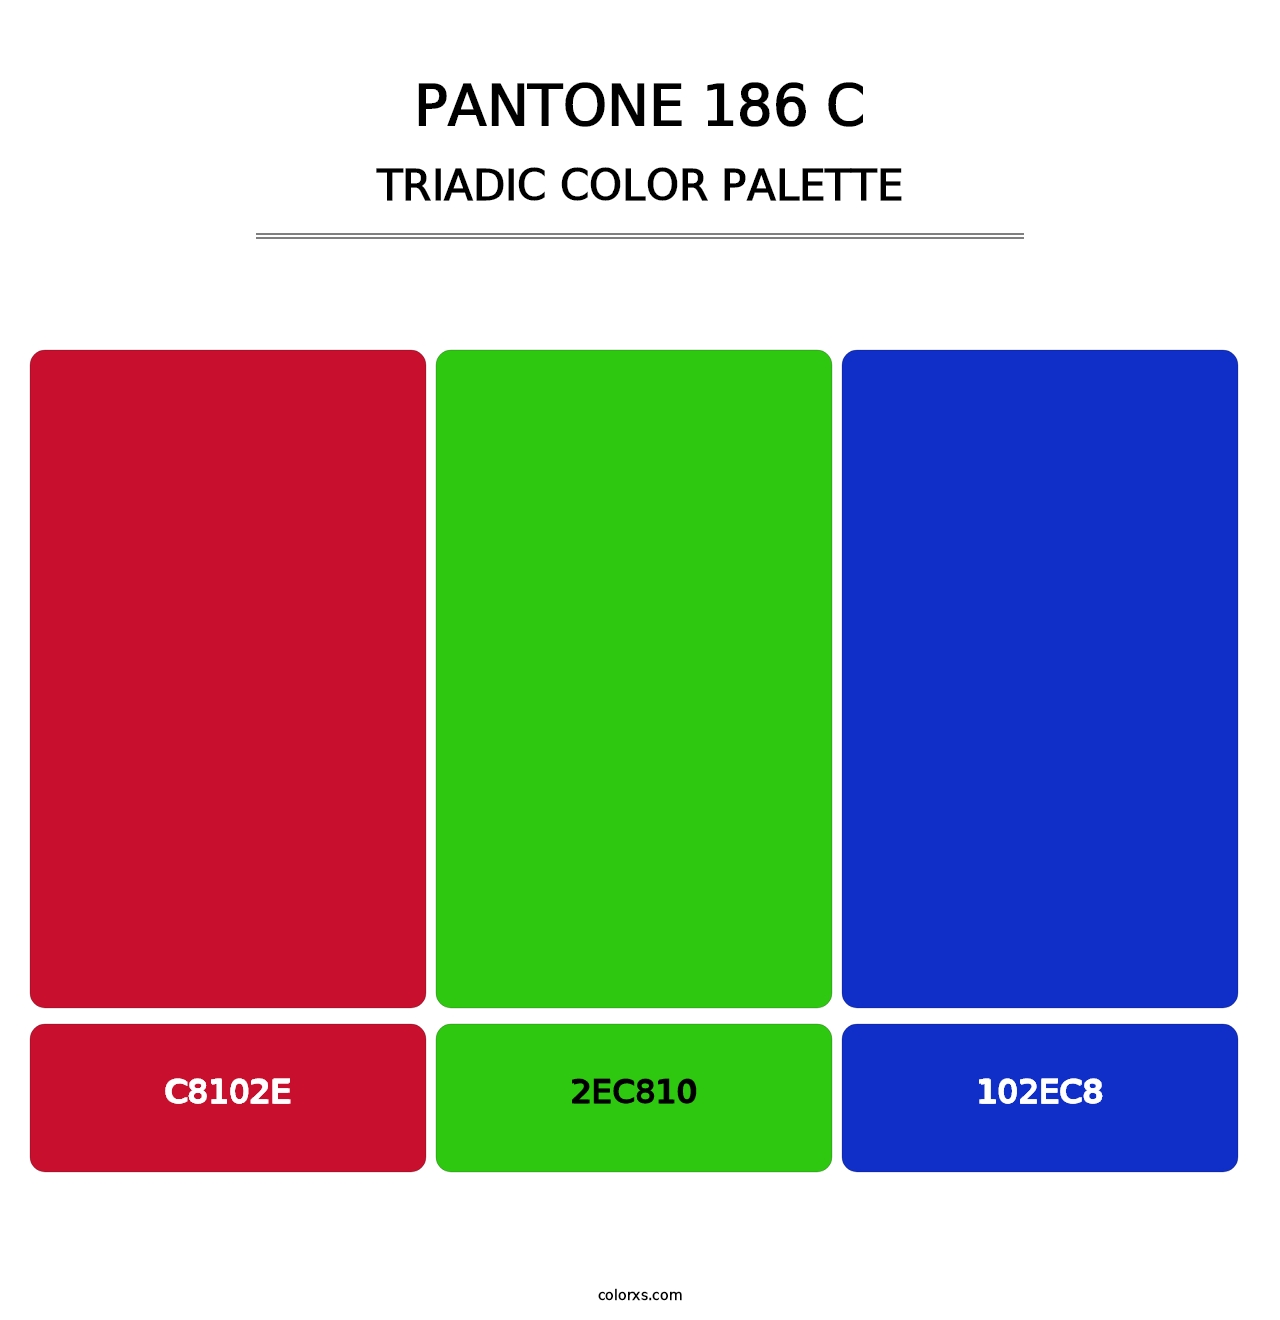 PANTONE 186 C - Triadic Color Palette